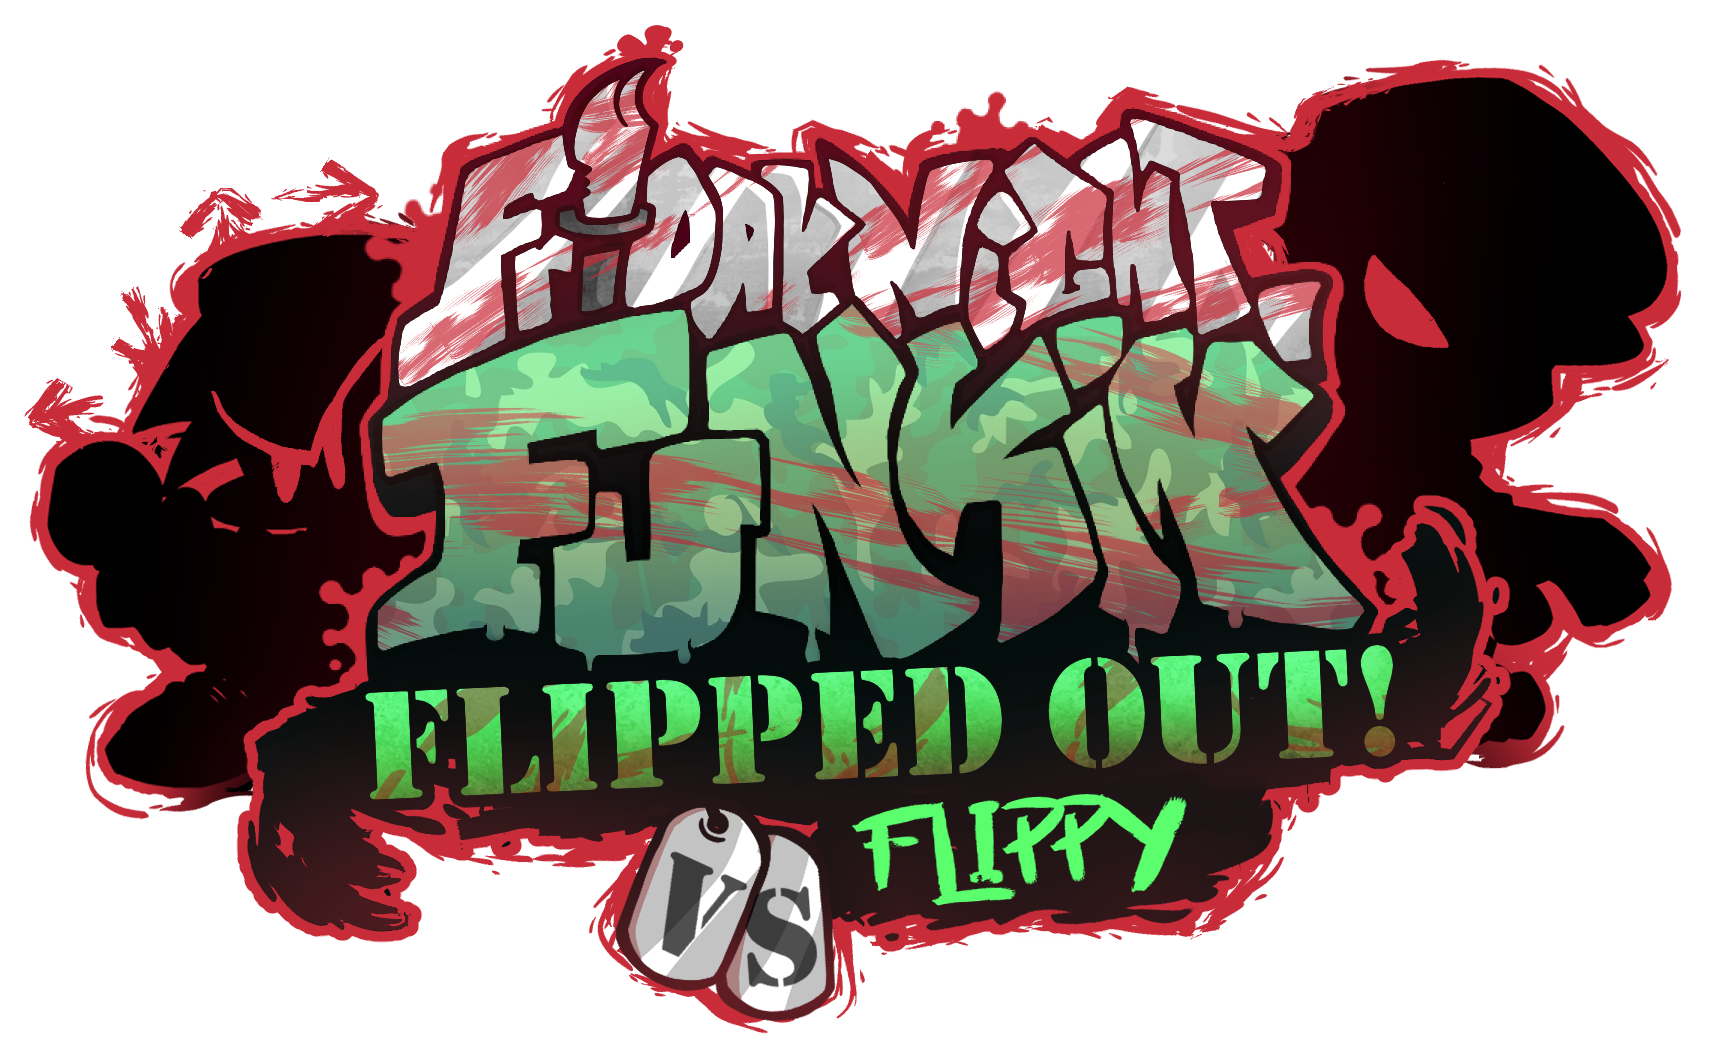 FNF: Girls' Night Out, Funkipedia Mods Wiki